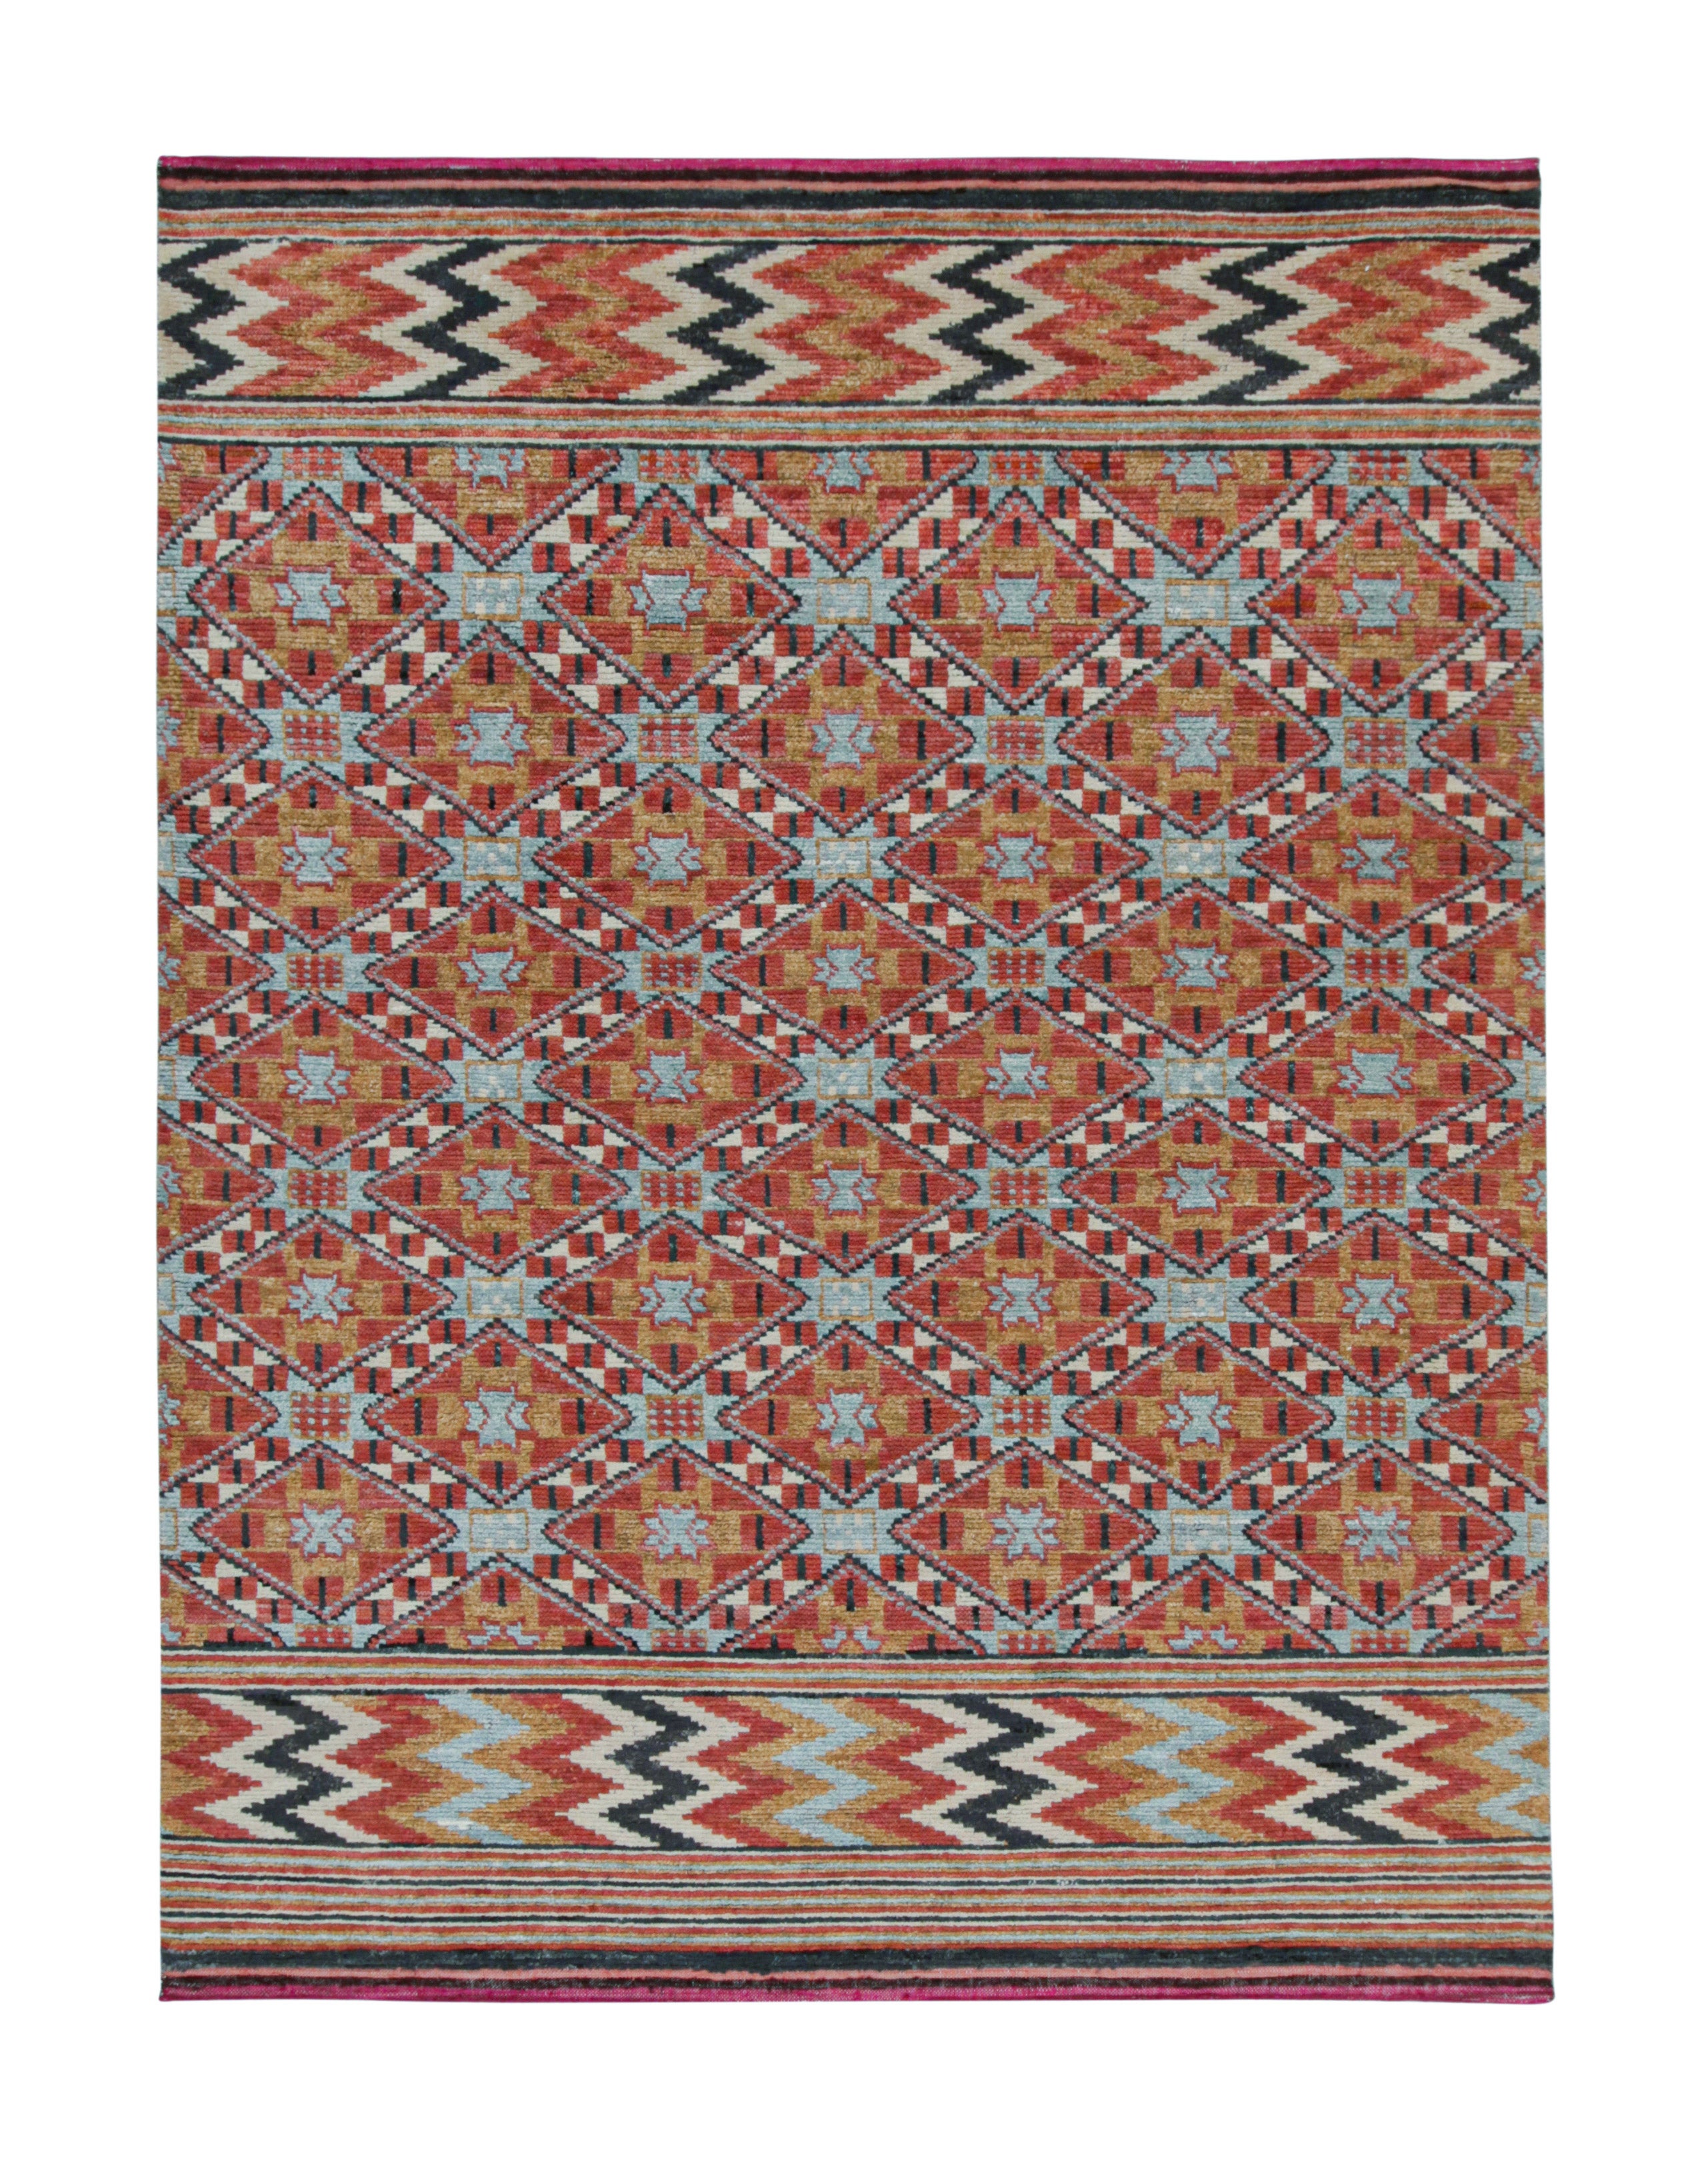 Tapis et tapis de style marocain de Kilim à motifs géométriques orange, bleu et brun